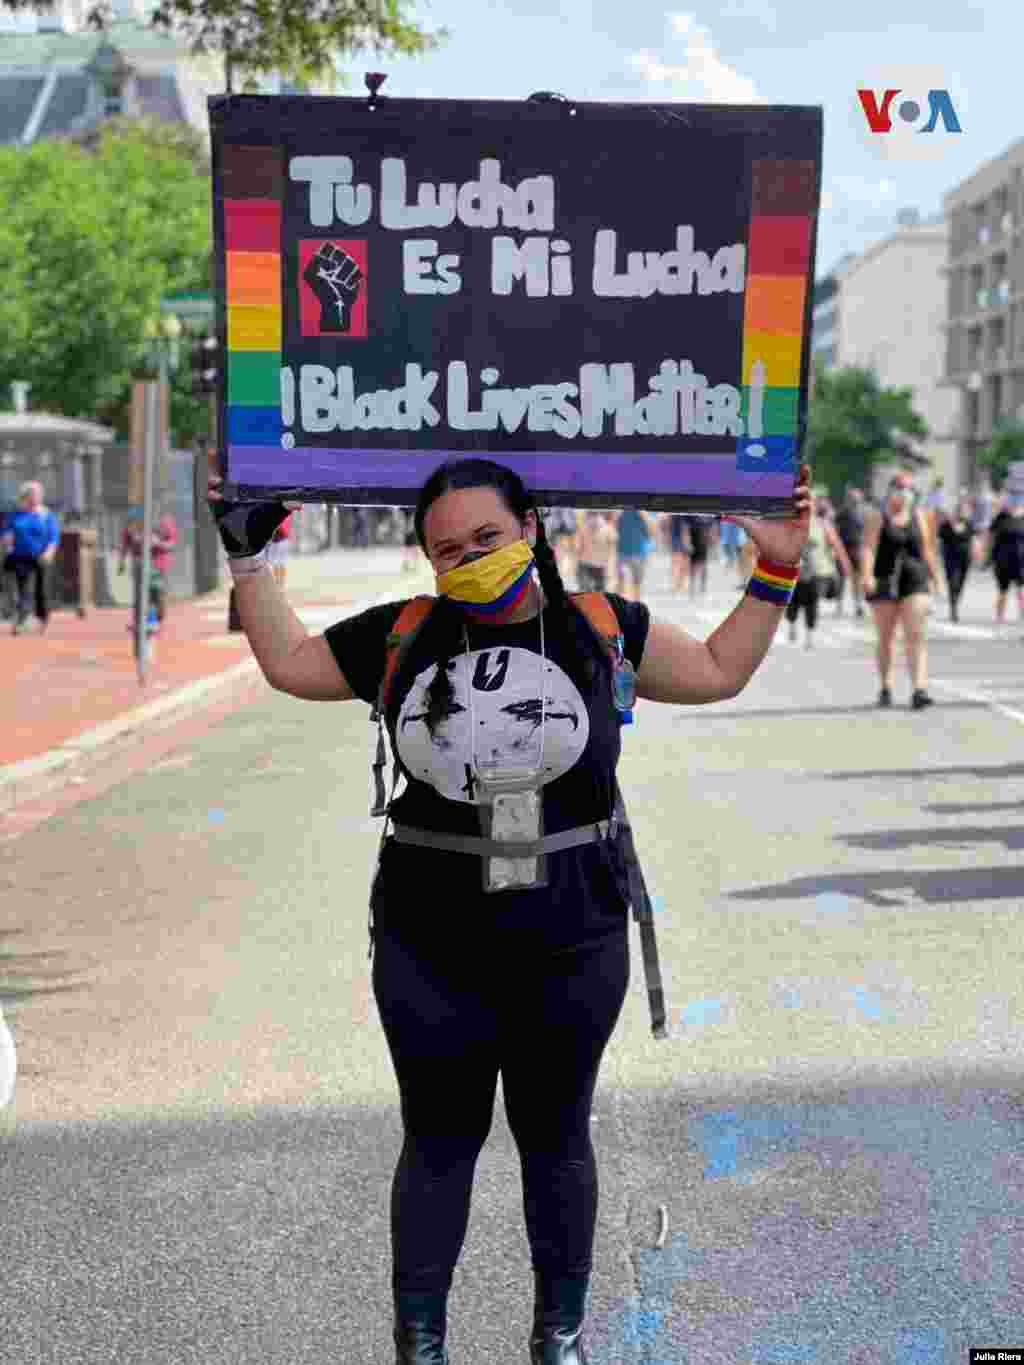 Otra manifestante en Washington D.C. que expresa su apoyo a las protestas contra la injusticia racial y el abuso policial. 6 de junio de 2020.